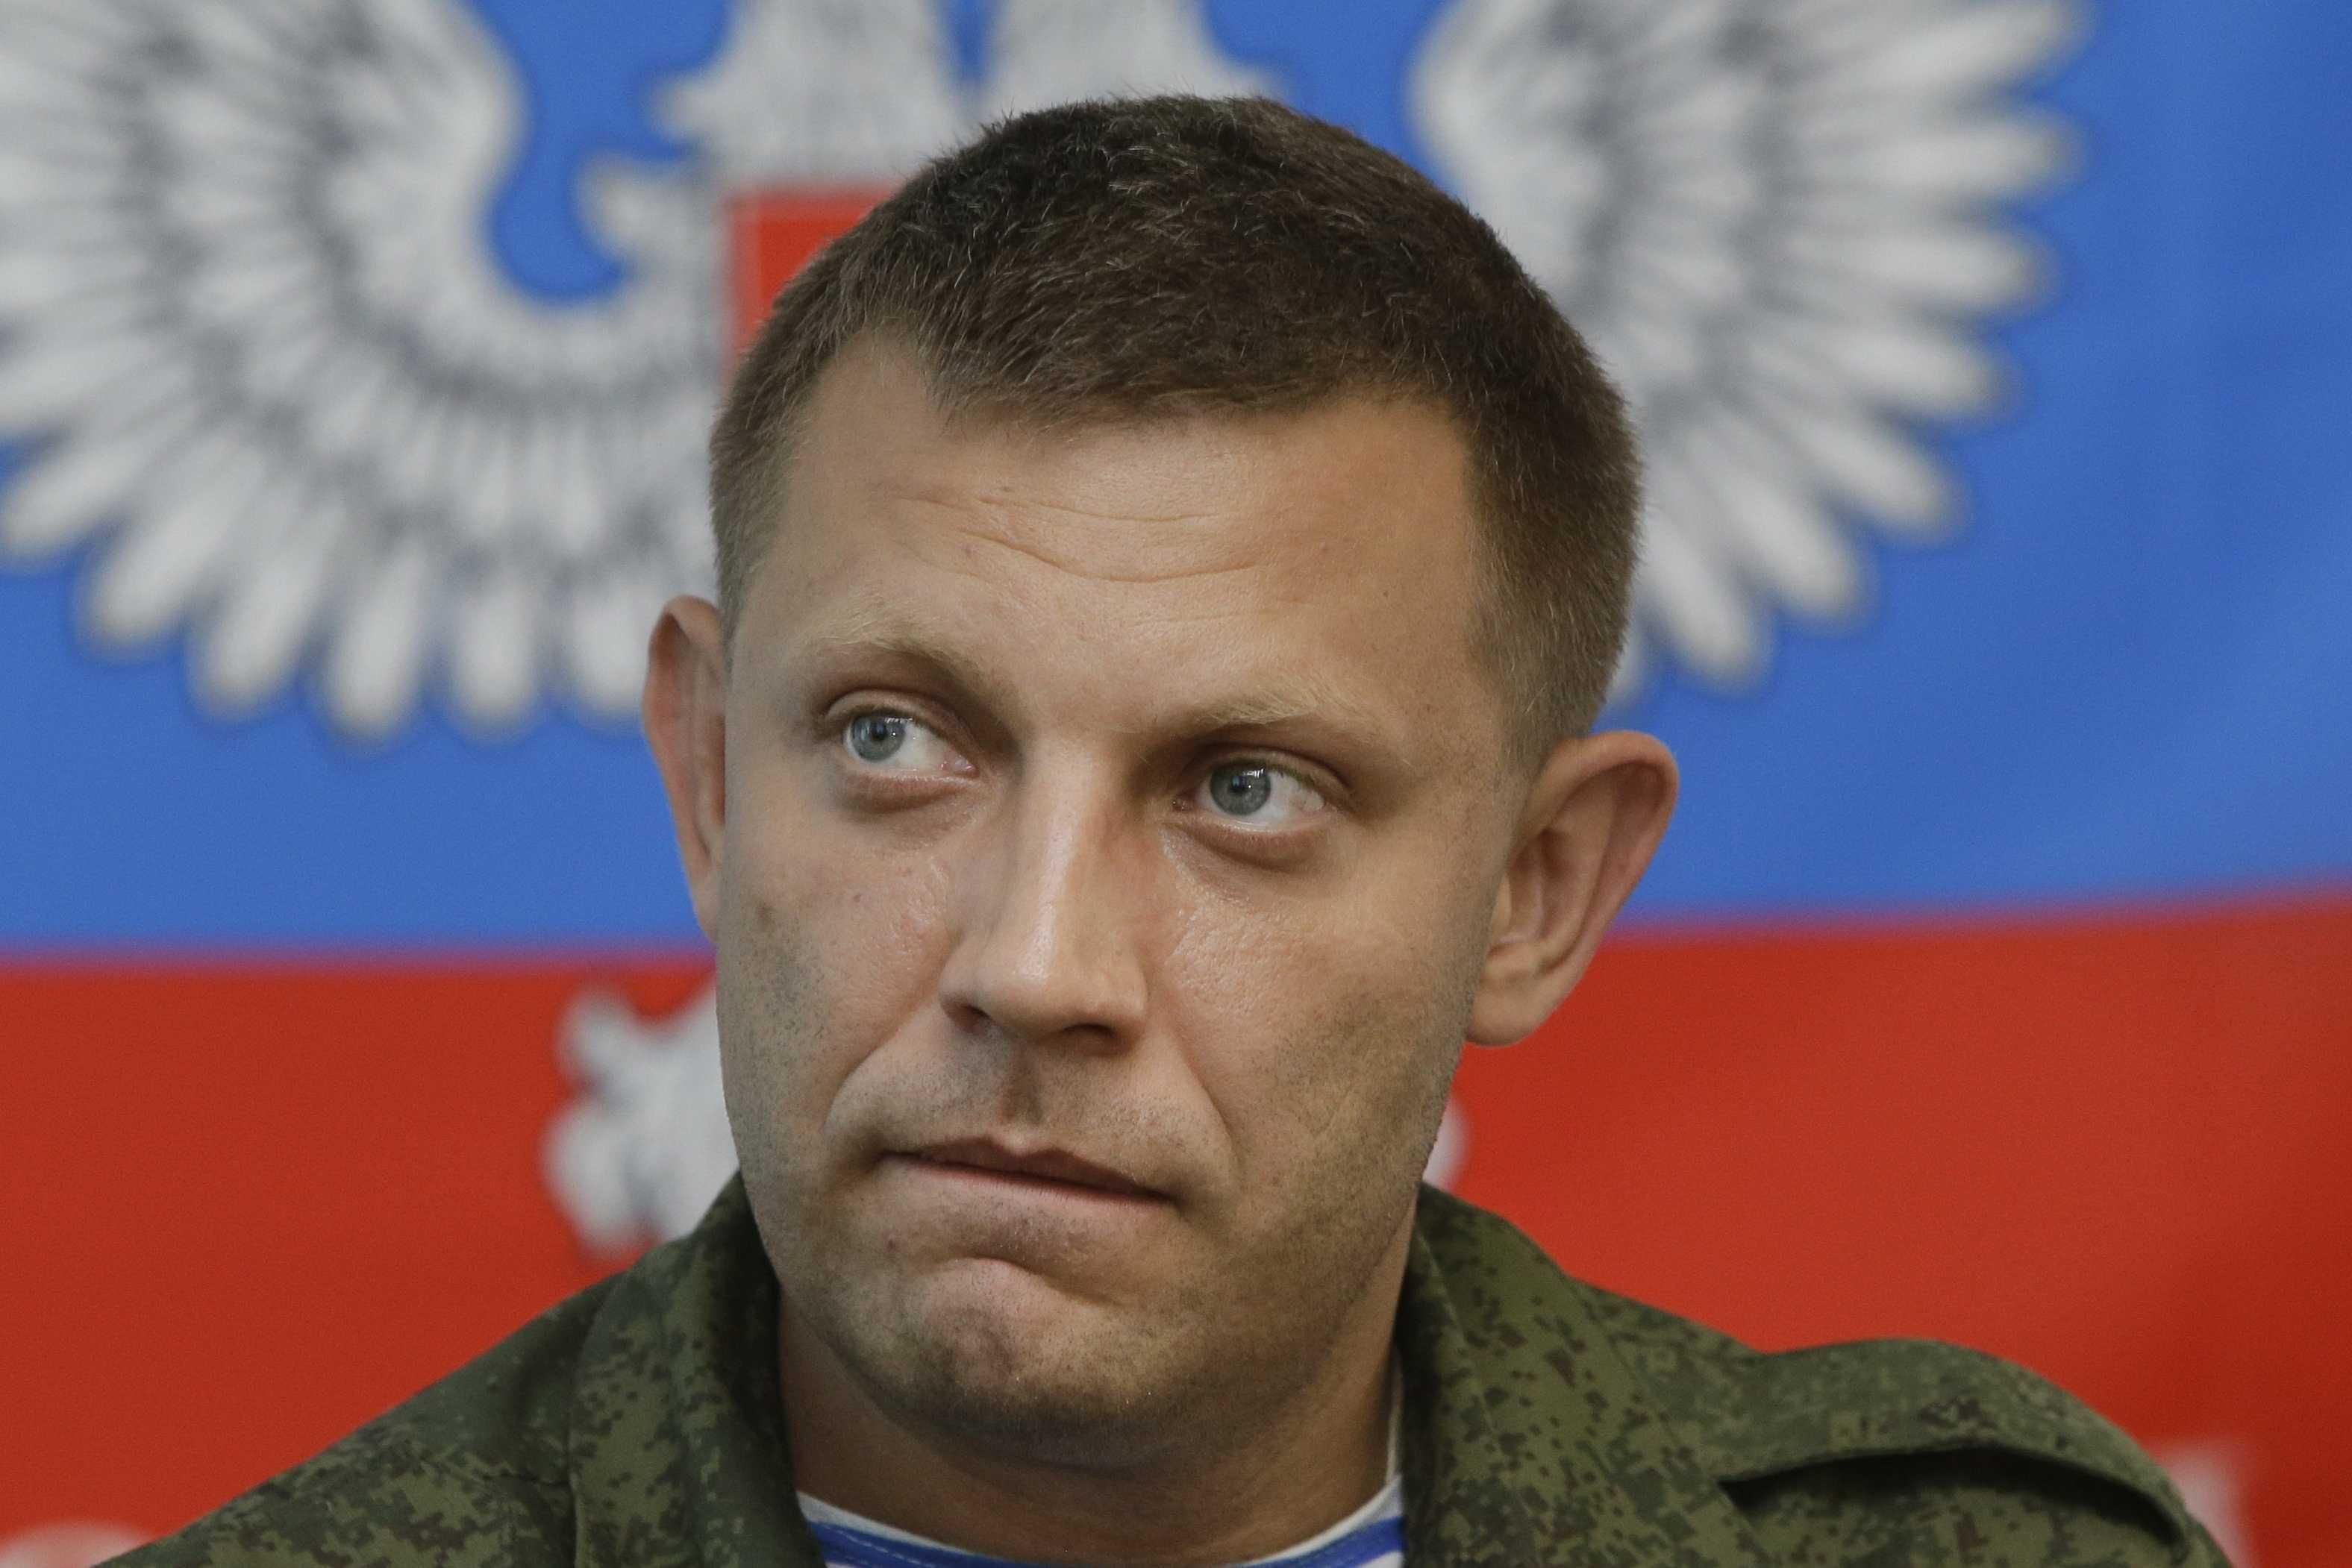 Олександр Захарченко вбитий: ватажка окупантів підірвали в кафе «Сєпар» в Донецьку